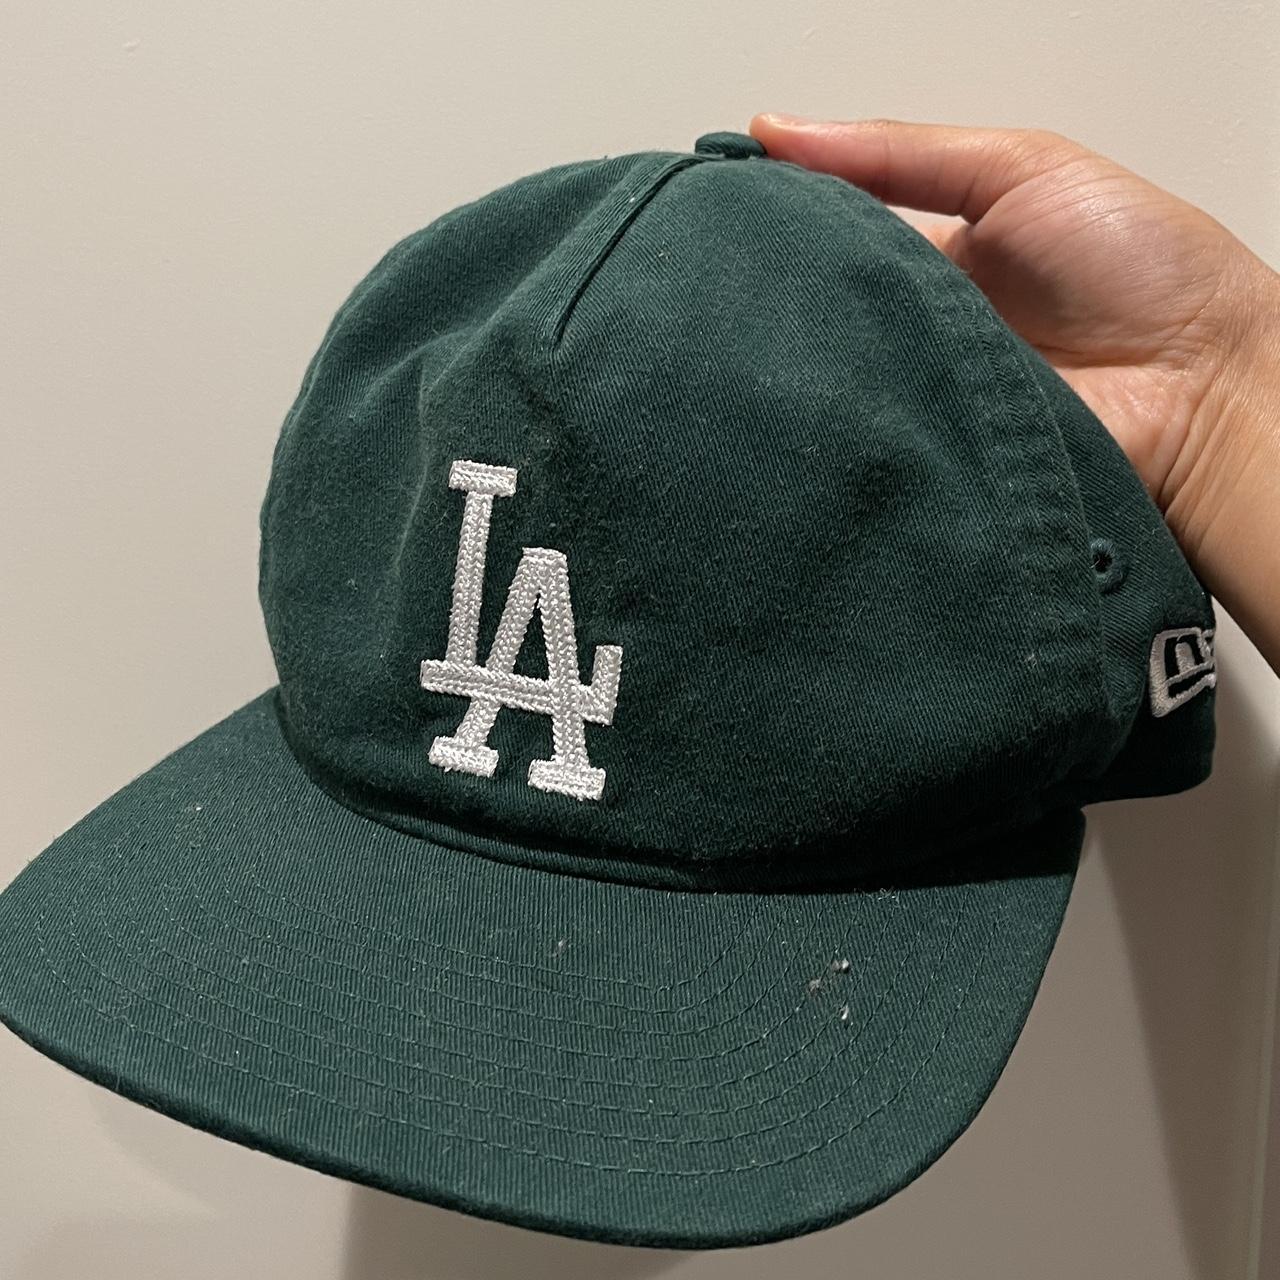 Forest green LA cap #cap #hat #LA - Depop